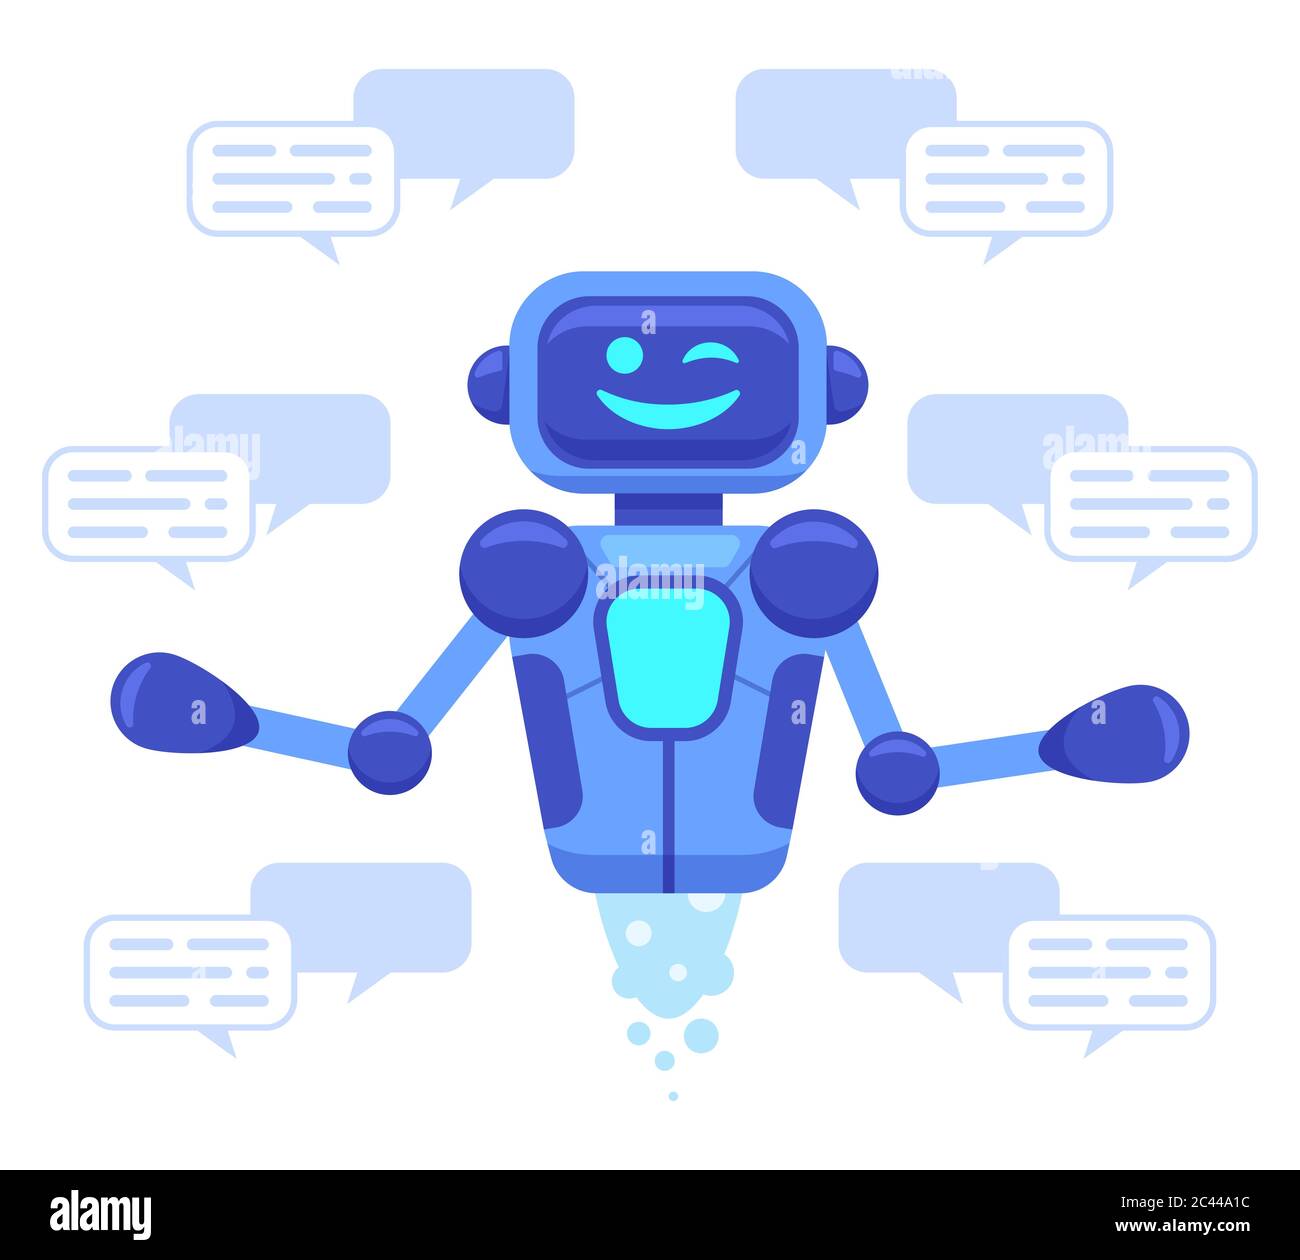 Supporto bot chat. Conversazione online con l'assistente bot, i robot supportano le chat, l'assistente virtuale parla il servizio illustrazione vettoriale isolata Illustrazione Vettoriale